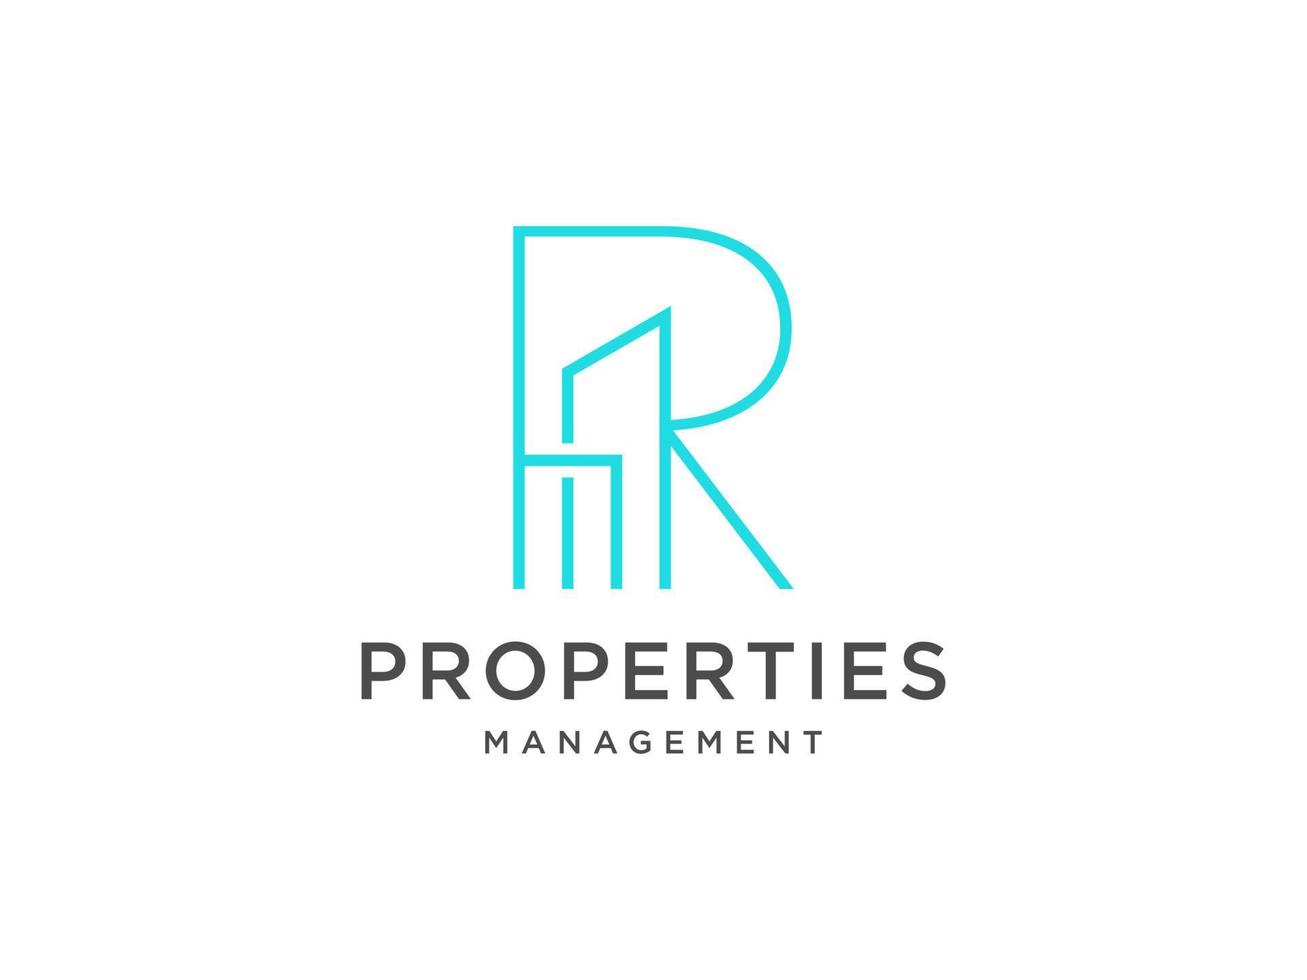 Logo-Design von r in Vektor für Bau, Haus, Immobilien, Gebäude, Eigentum. minimale fantastische trendige professionelle logo-design-vorlage auf schwarzem hintergrund.